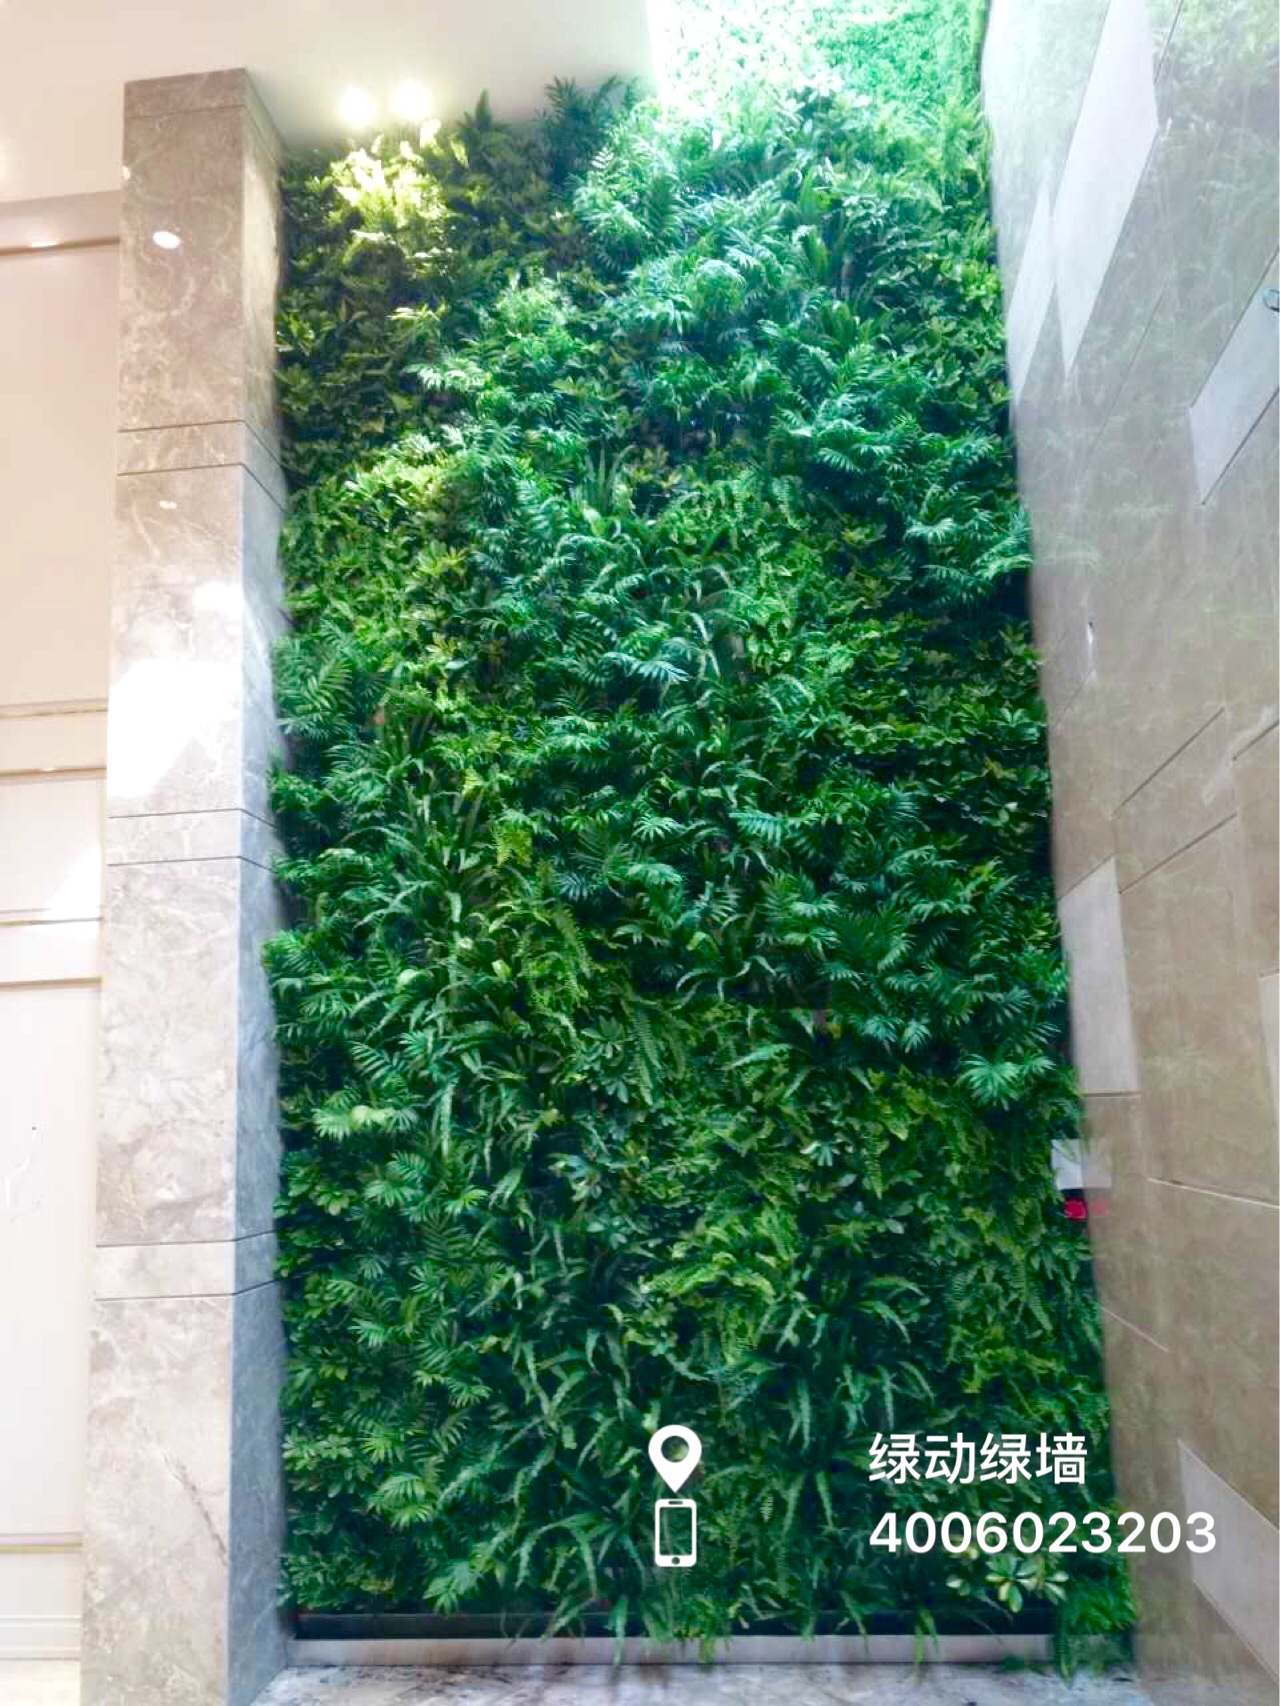 北京三里屯咖啡店植物墙